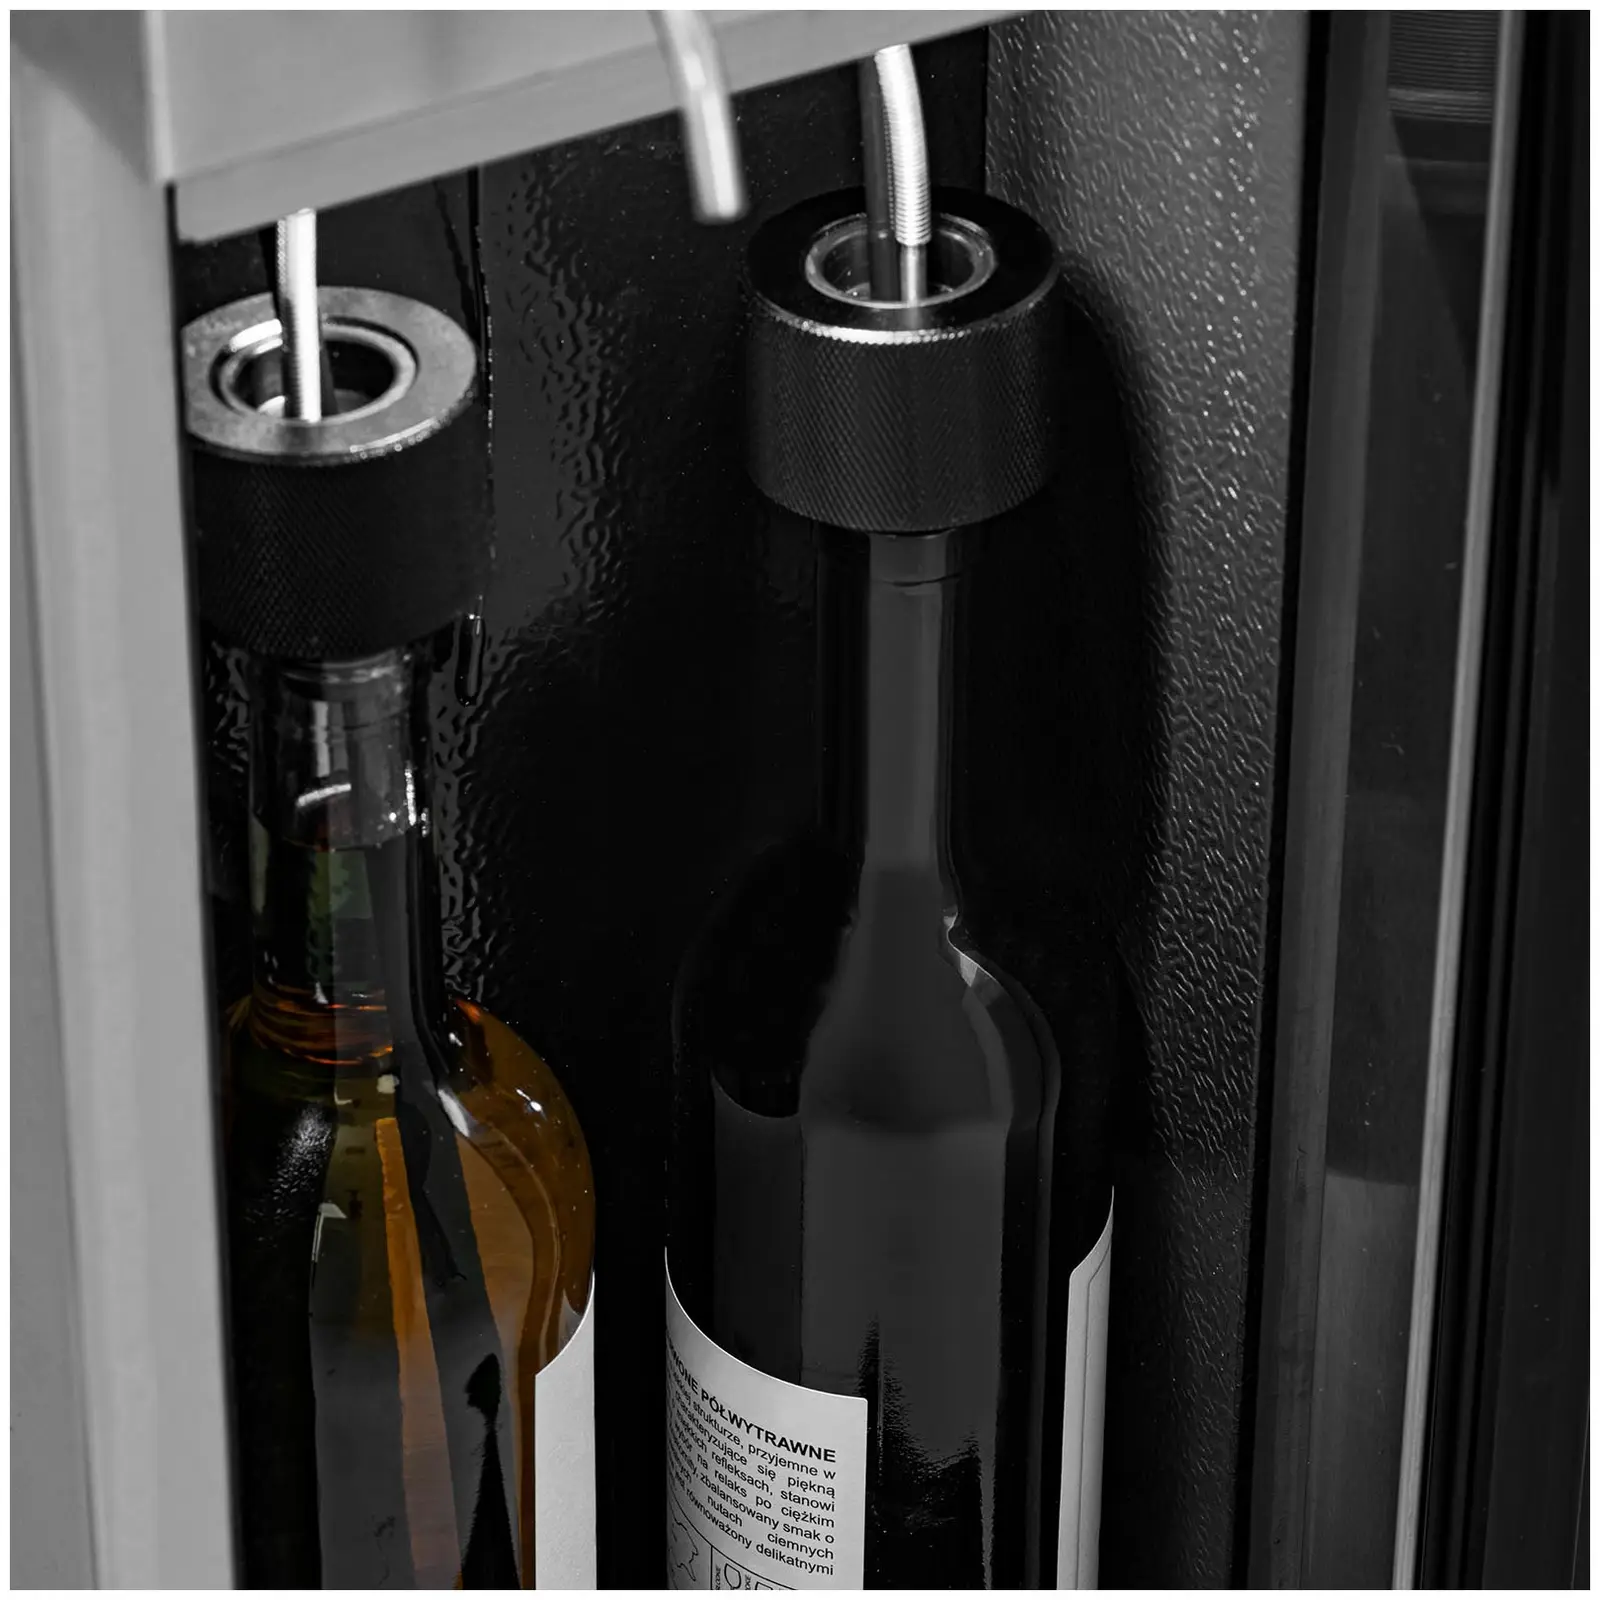 Distributeur de vin au verre - 2 bouteilles - Inox